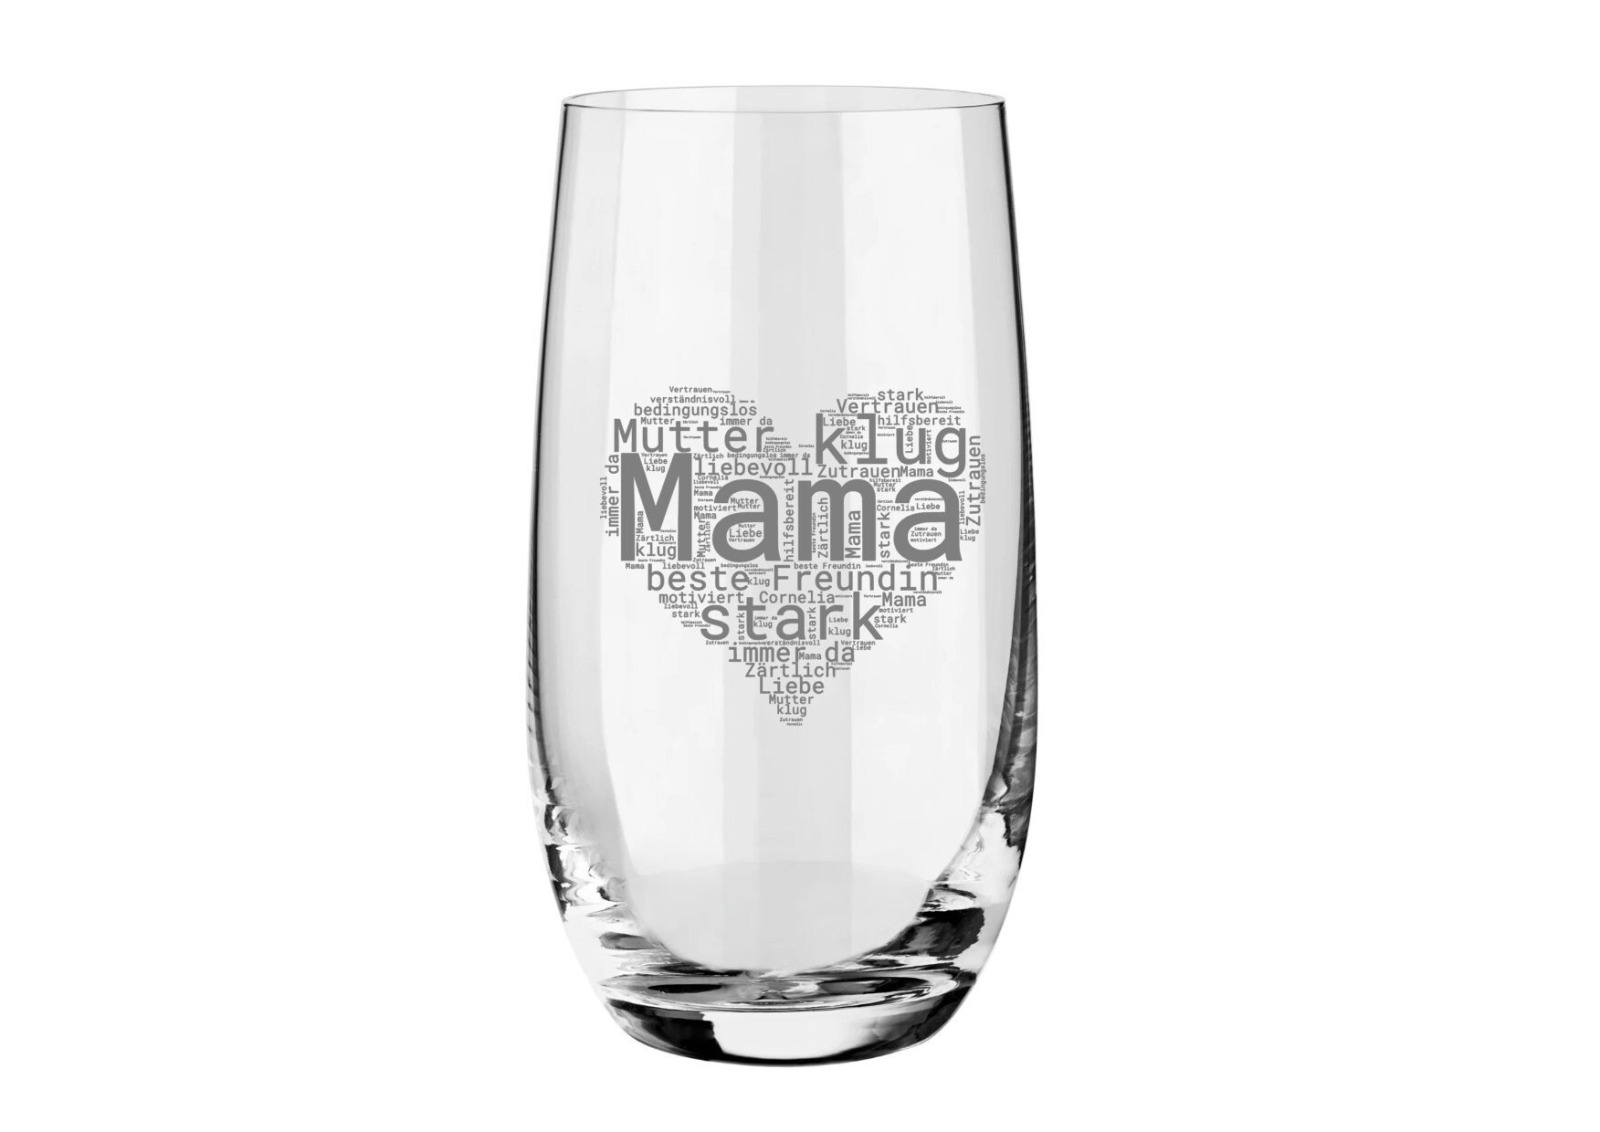 Personalisiertes Glasgeschenk zum Muttertag - Einzigartiges Geschenk für deine Mama, individueller